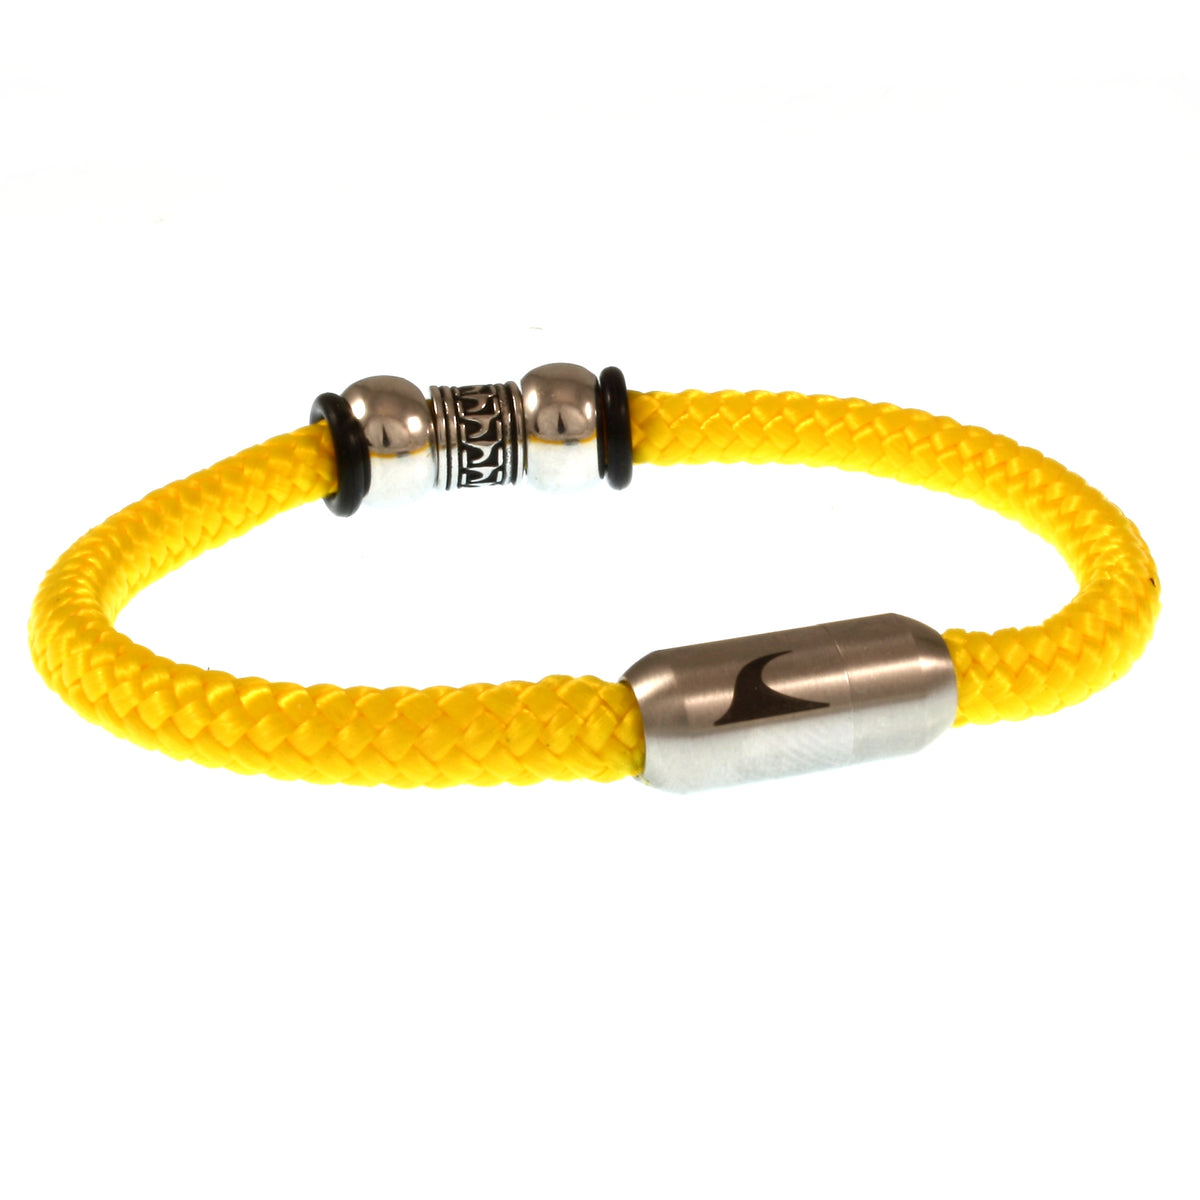 Herren-Segeltau-Armband-atoll-gelb-geflochten-Edelstahlverschluss-hinten-wavepirate-shop-st